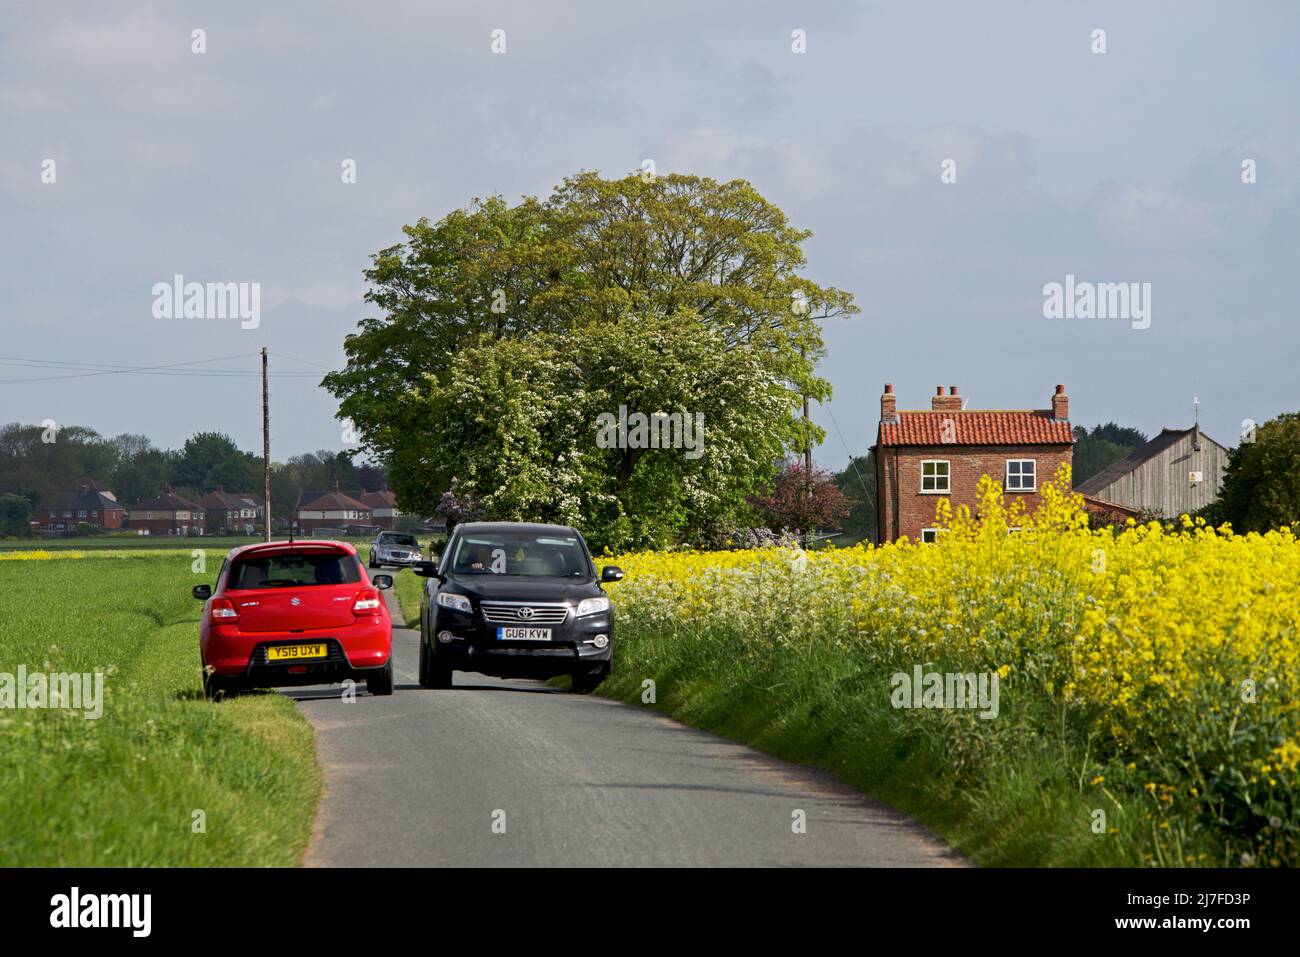 Voitures sur route étroite, maison et terre agricole près de Reness, East Yorkshire, Angleterre Royaume-Uni Banque D'Images